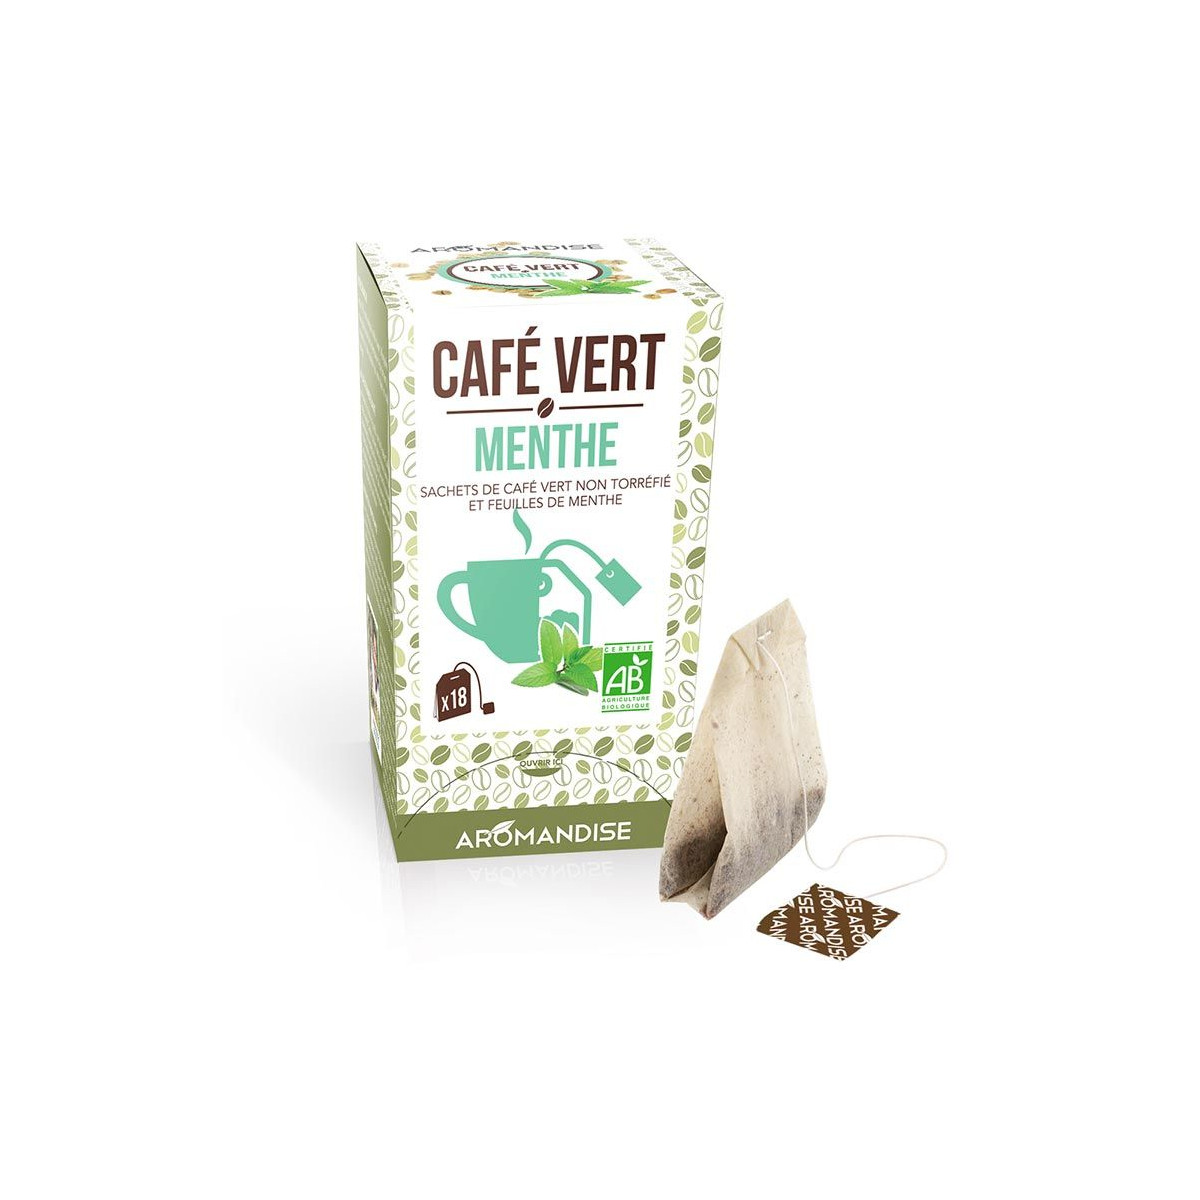 Café vert menthe - Aromandise - Packaging